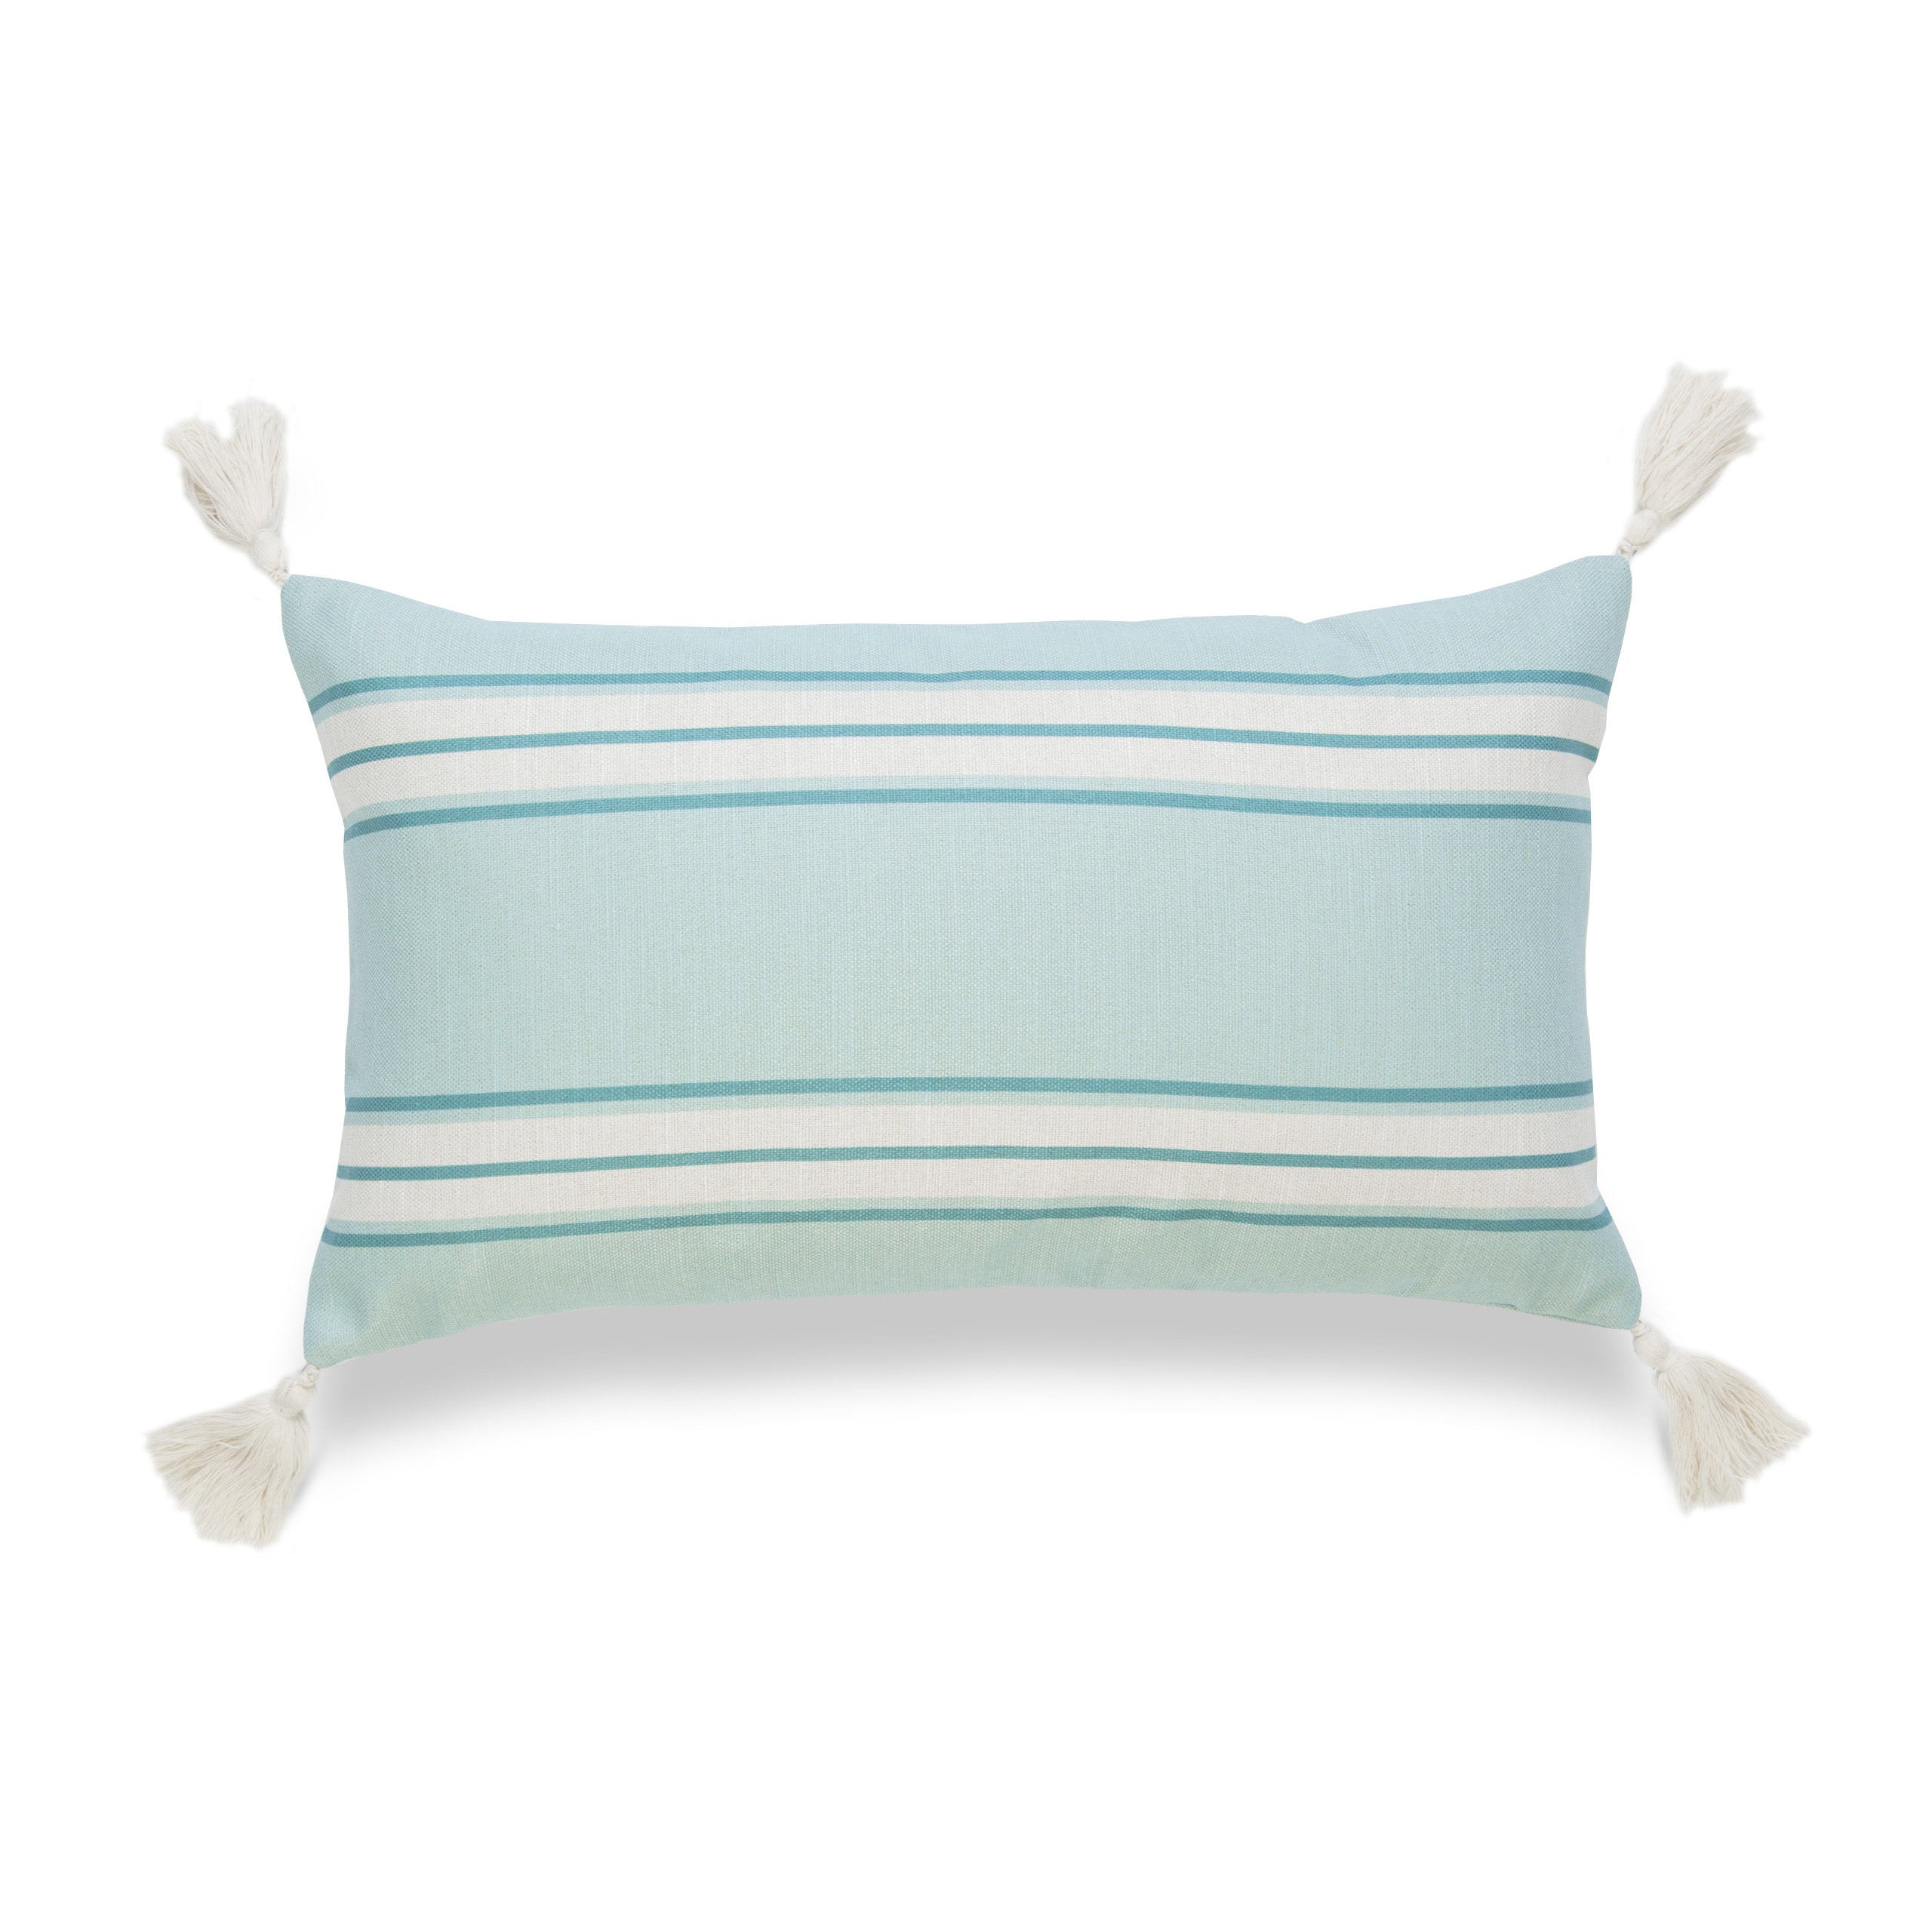 Coastal Indoor Outdoor Lumbar Pillow Cover, Aviv, Stripe Tassel, Aqua Turquoise, 12"x20"-0